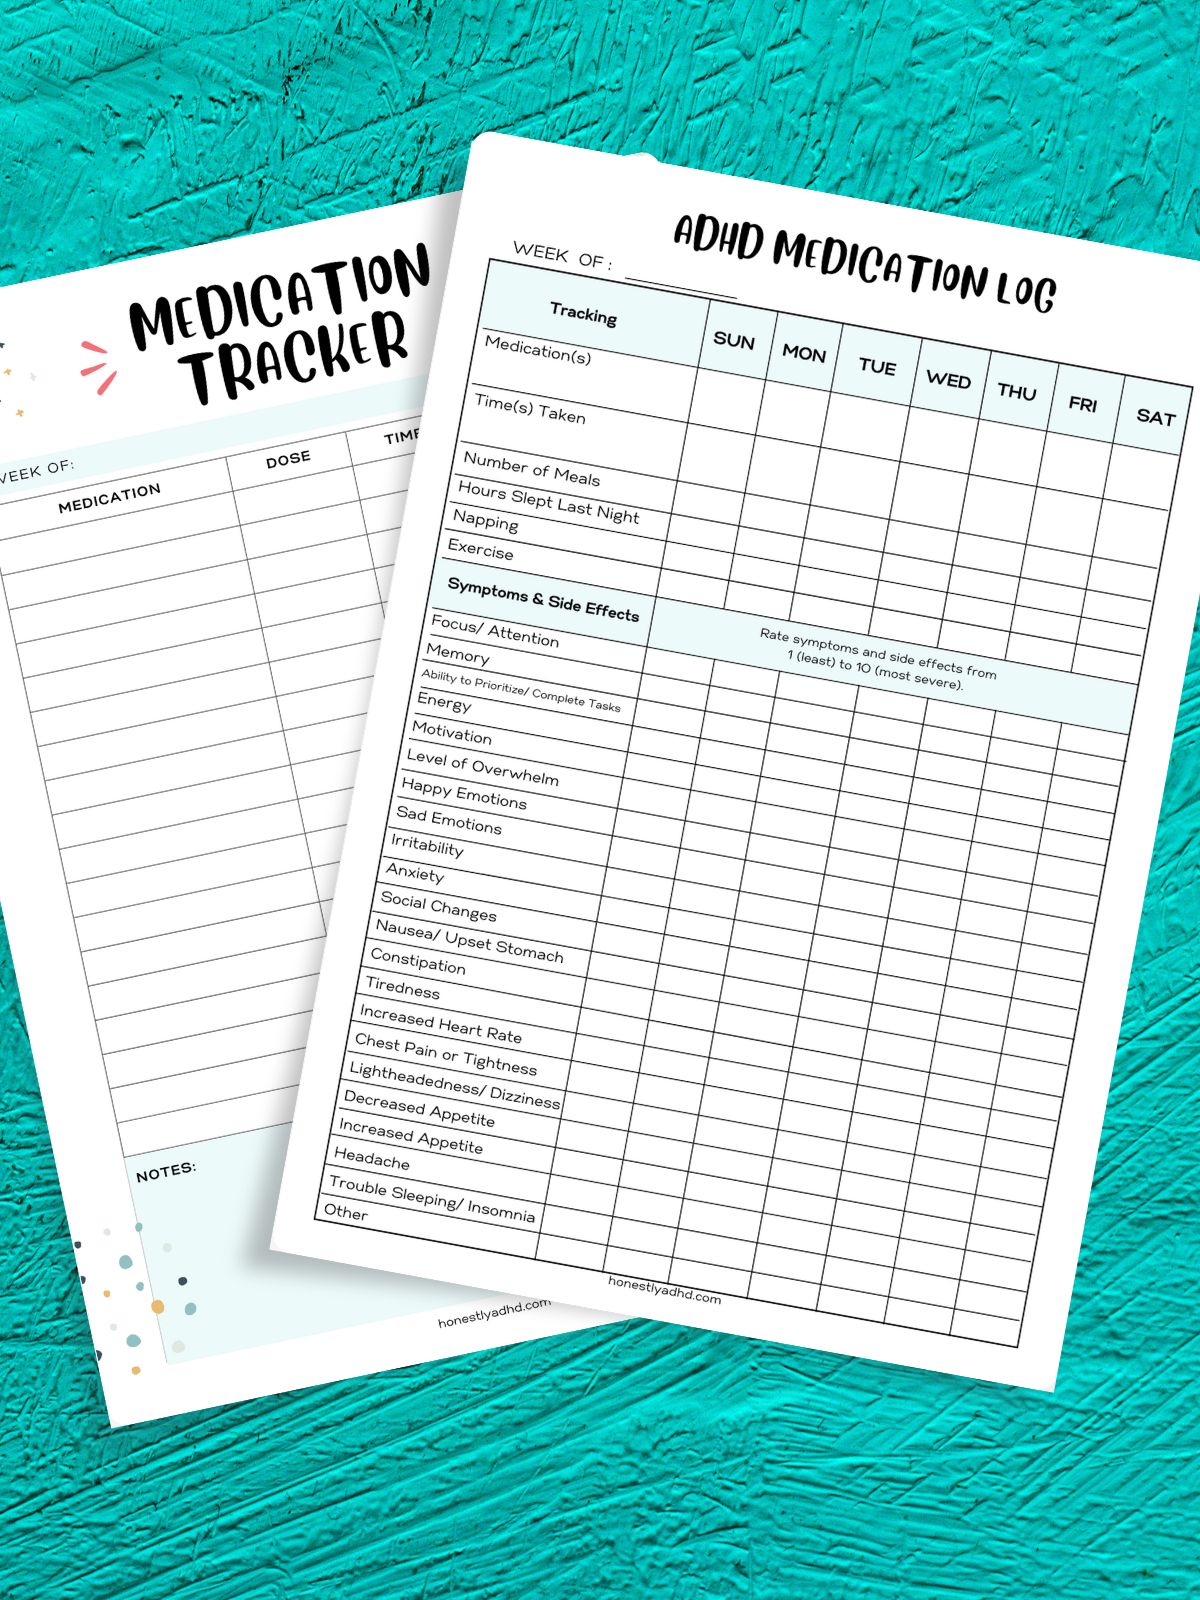 A printable medication tracker and a free printable ADHD symptom log.